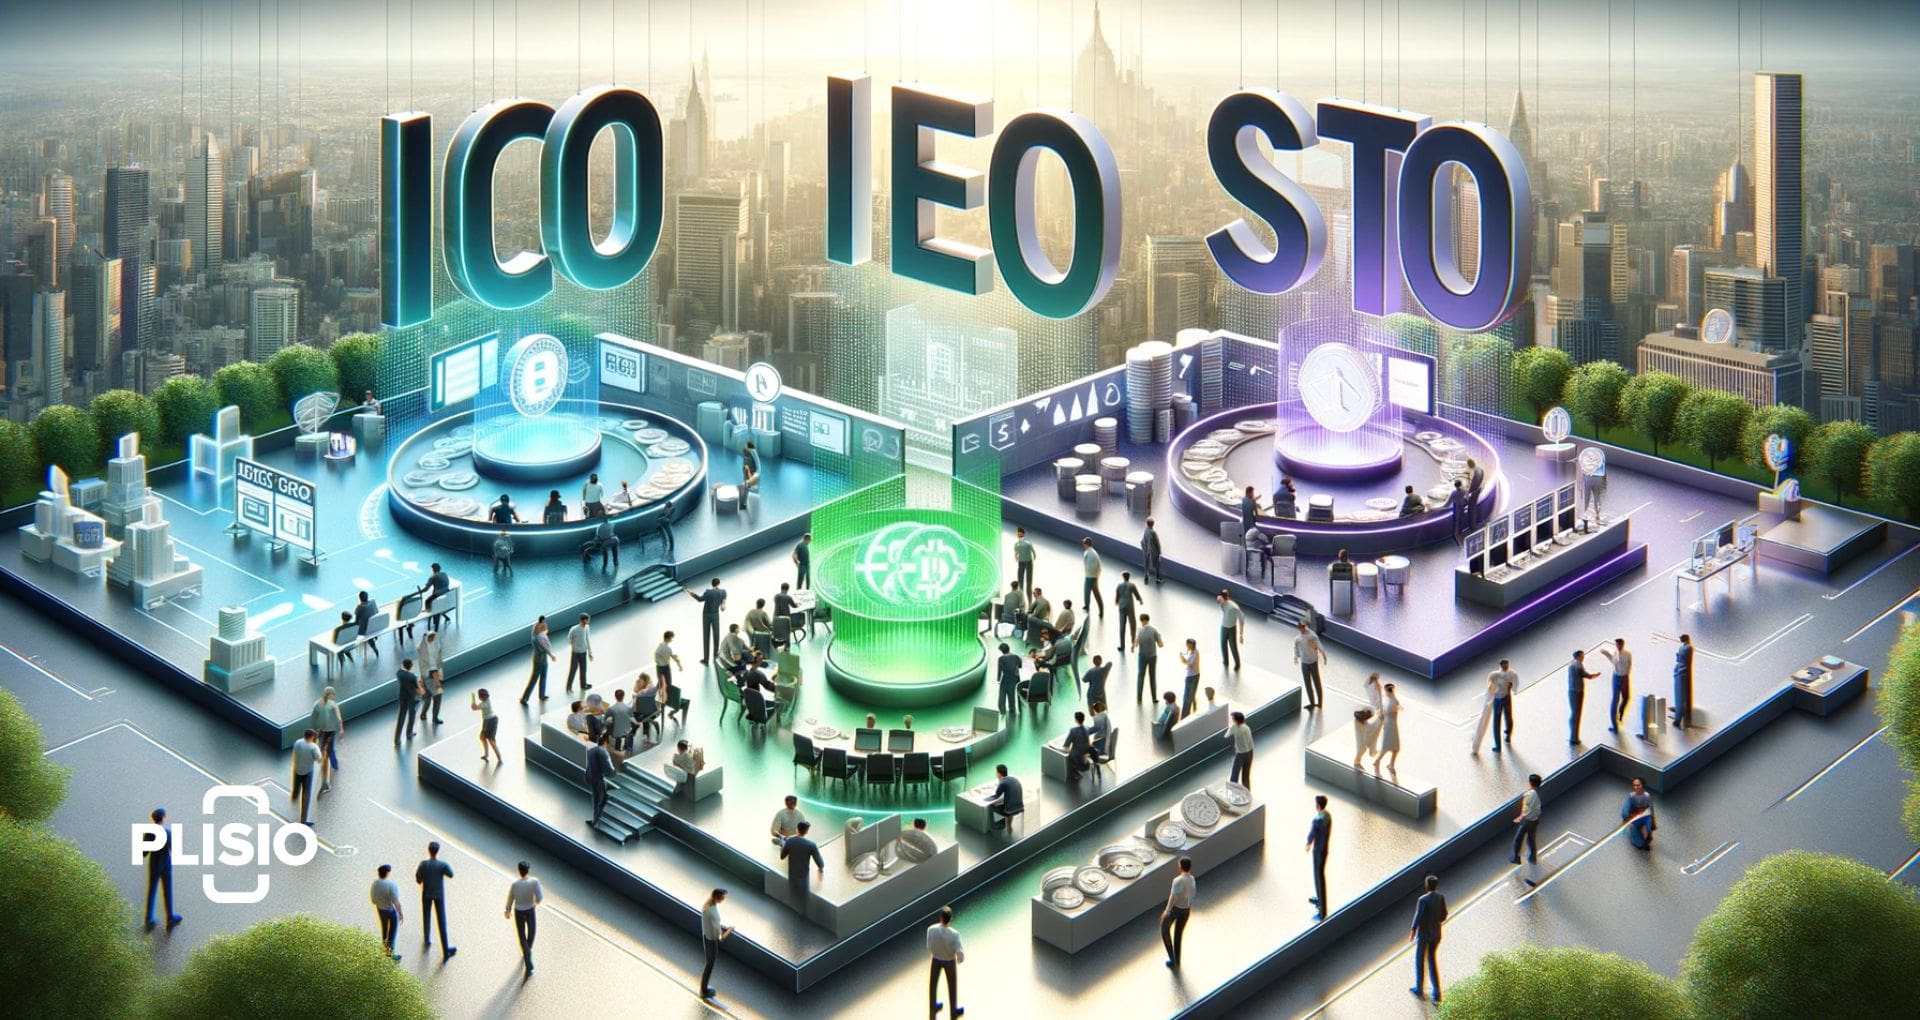 อะไรคือความแตกต่างระหว่าง ICO, IEO และ STO?